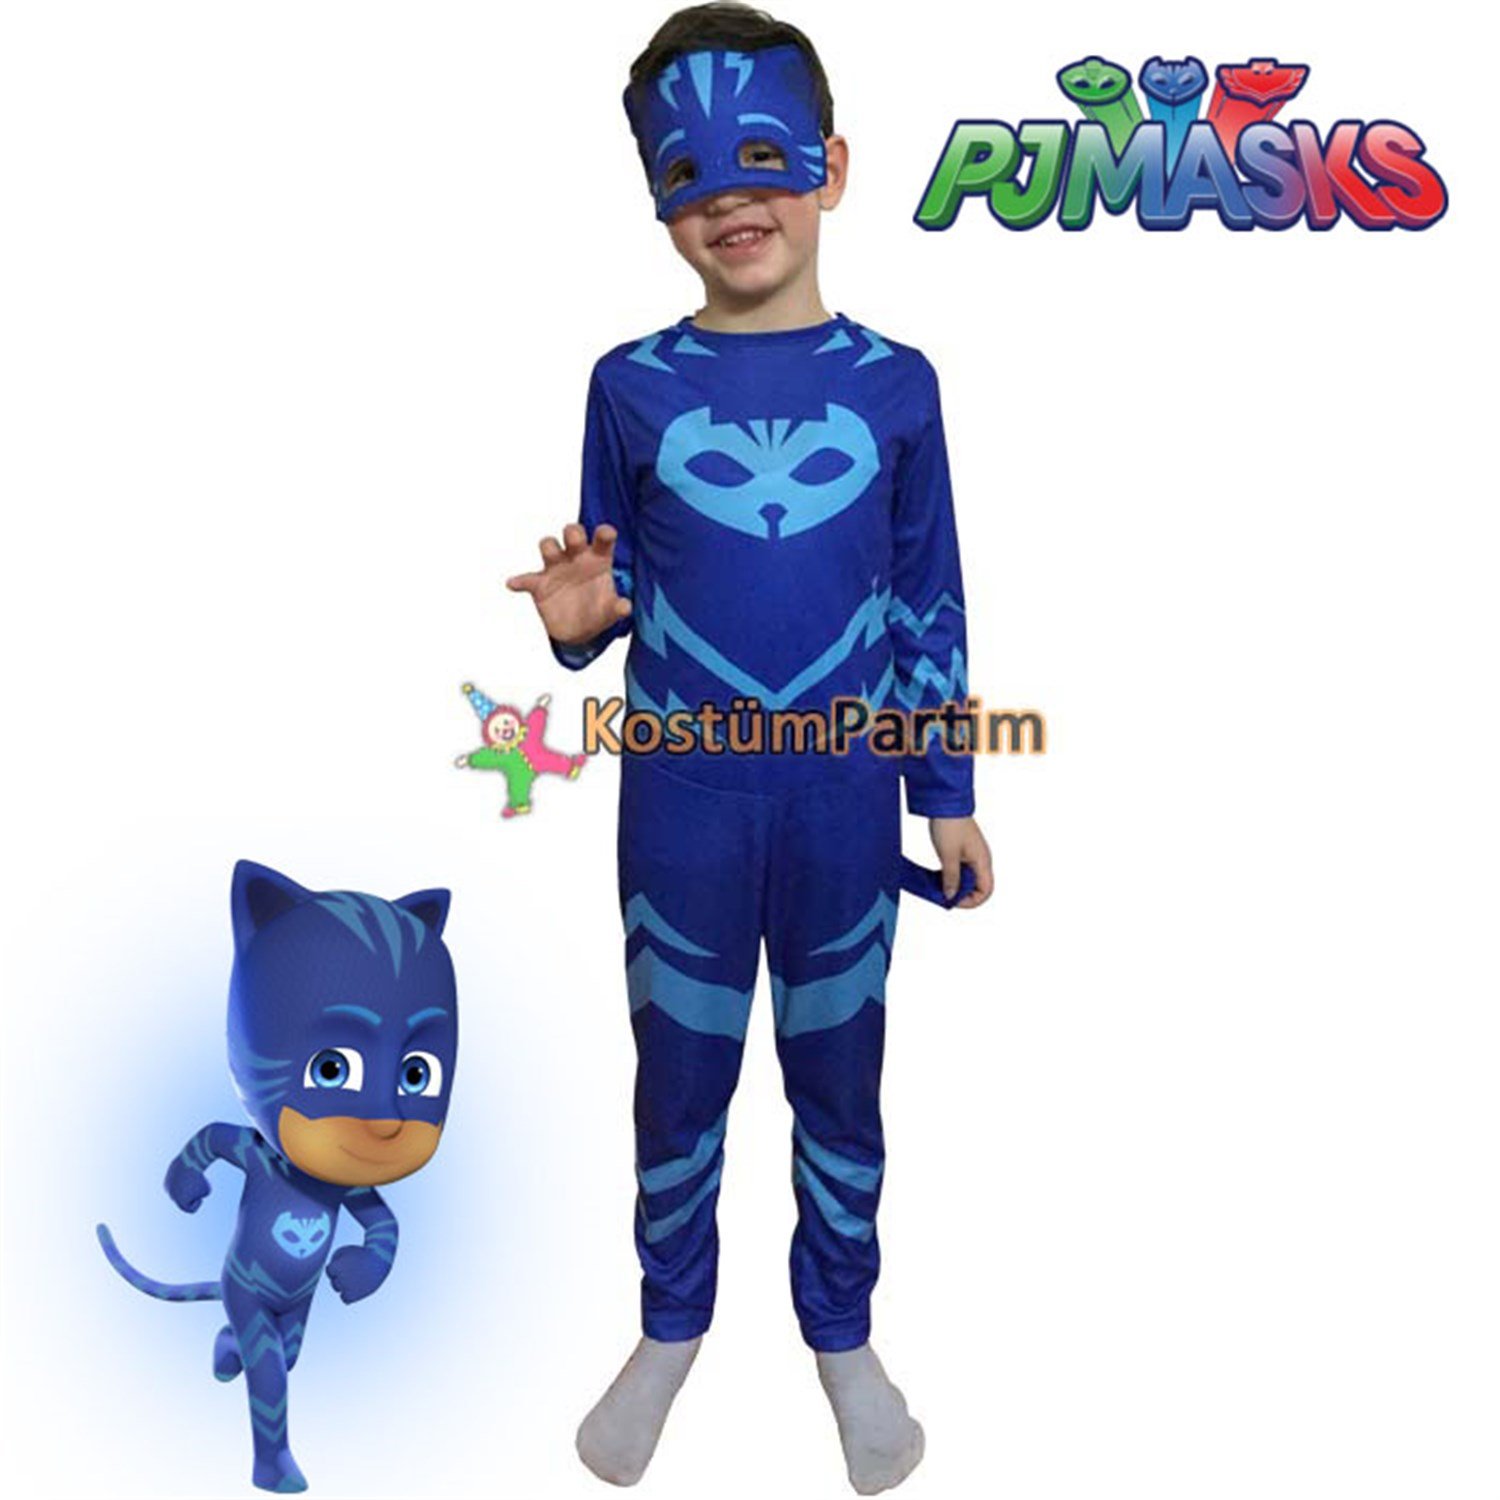 Pijamaskeliler Kedi Çocuk Kostümü, PJMask Catboy Kıyafeti - KostümPartim®